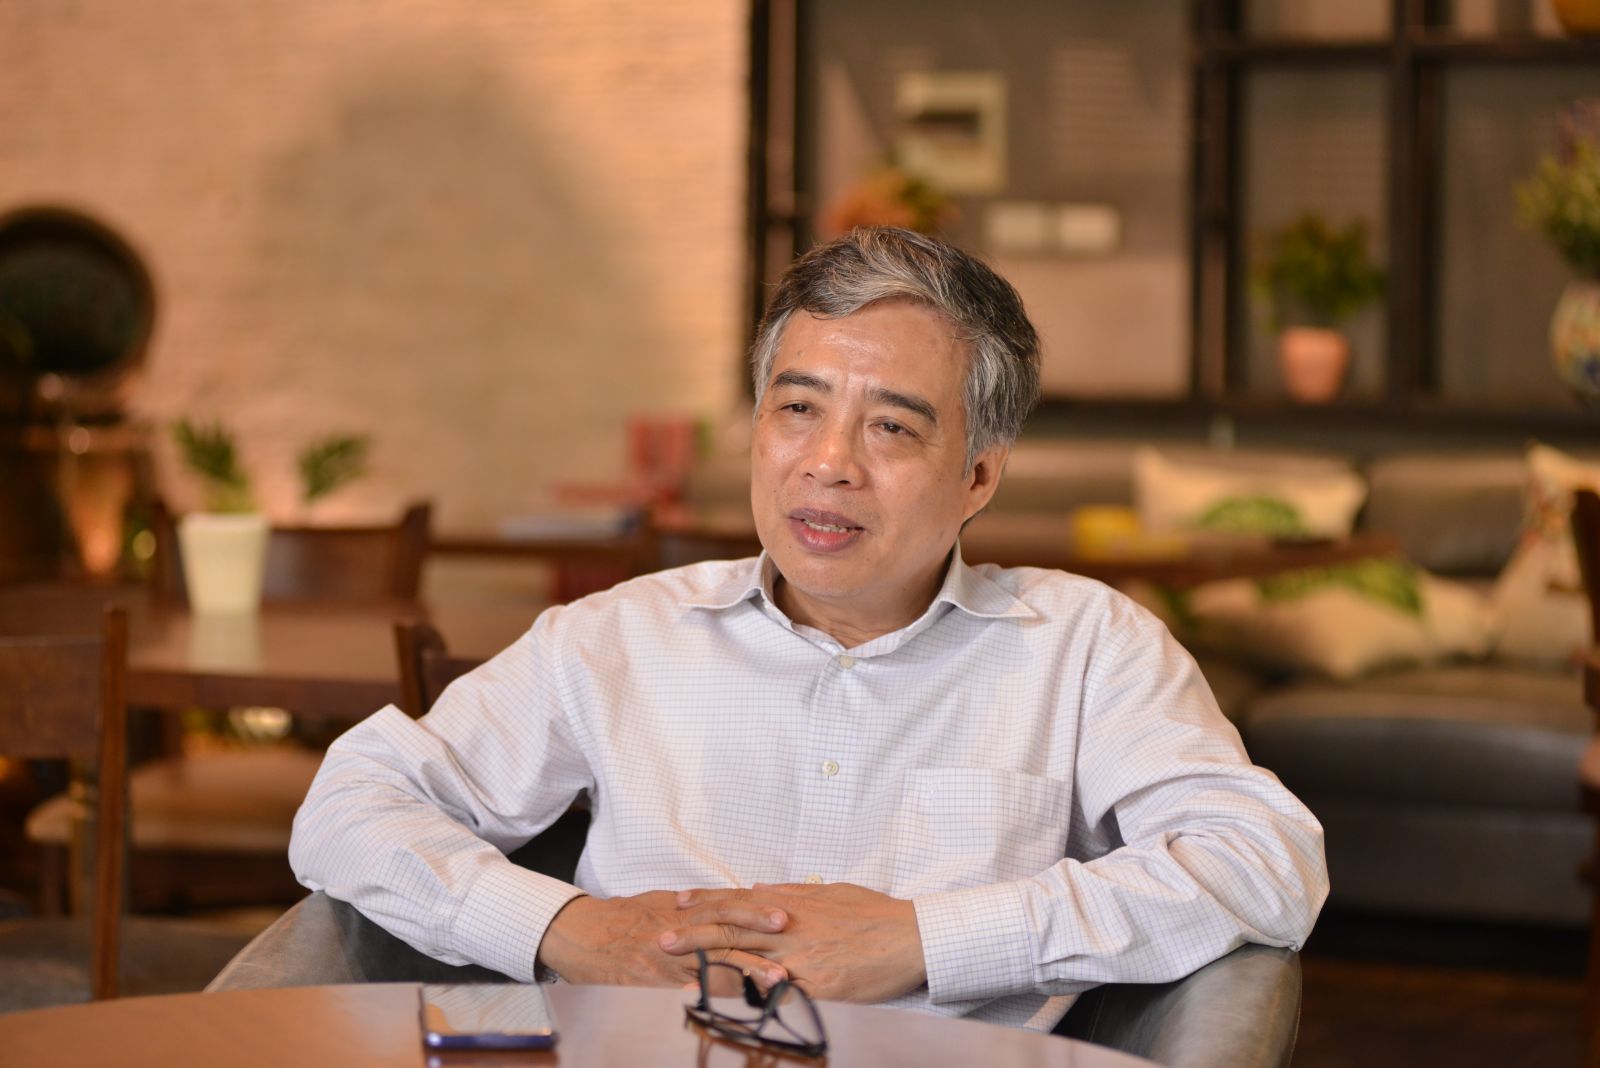 Nhà văn Trần Thanh Cảnh